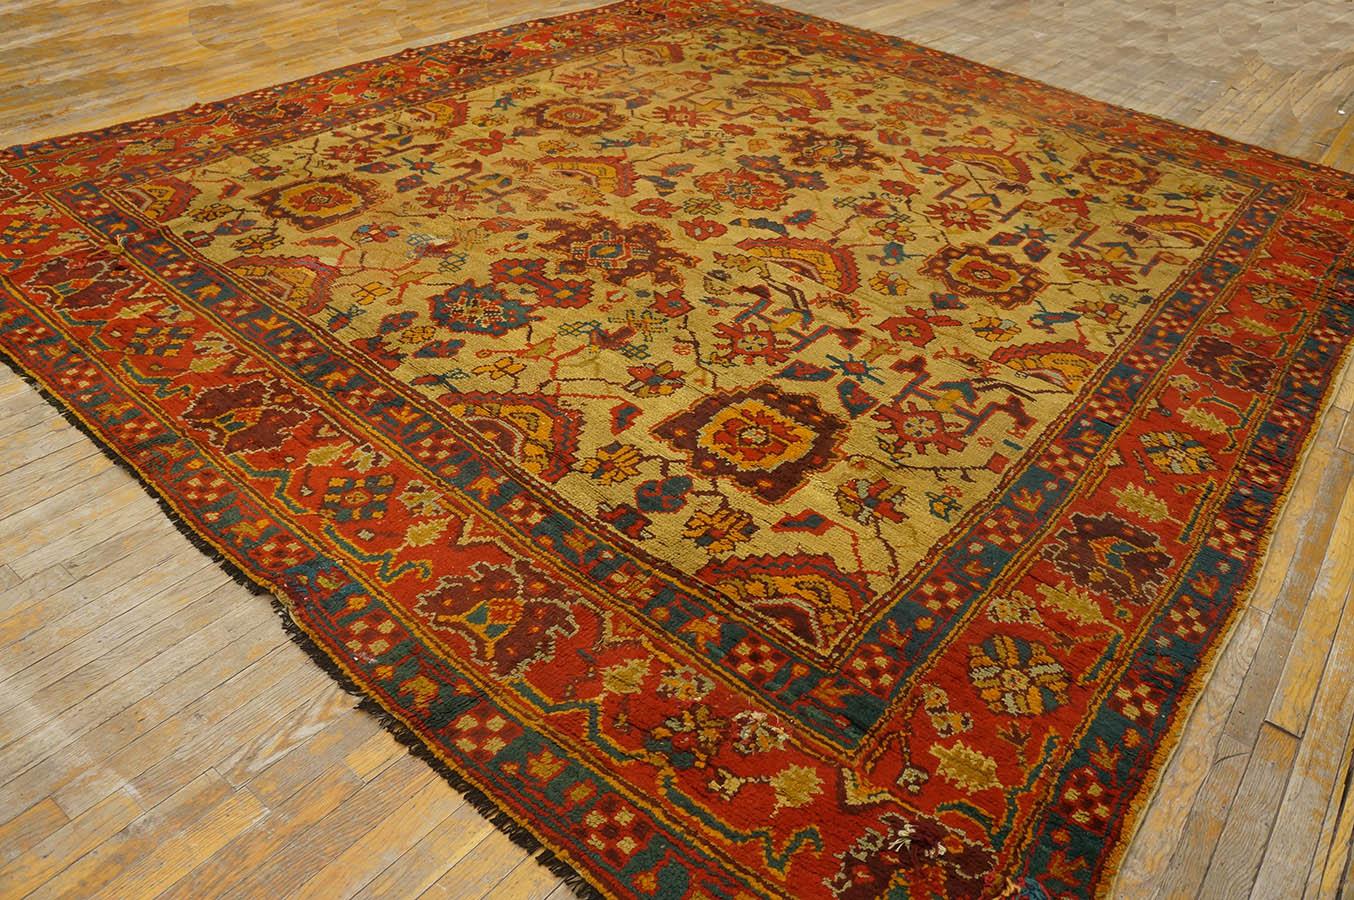 Antique Turkish Oushak rug, Size: 10' 10'' x 12' 8''.